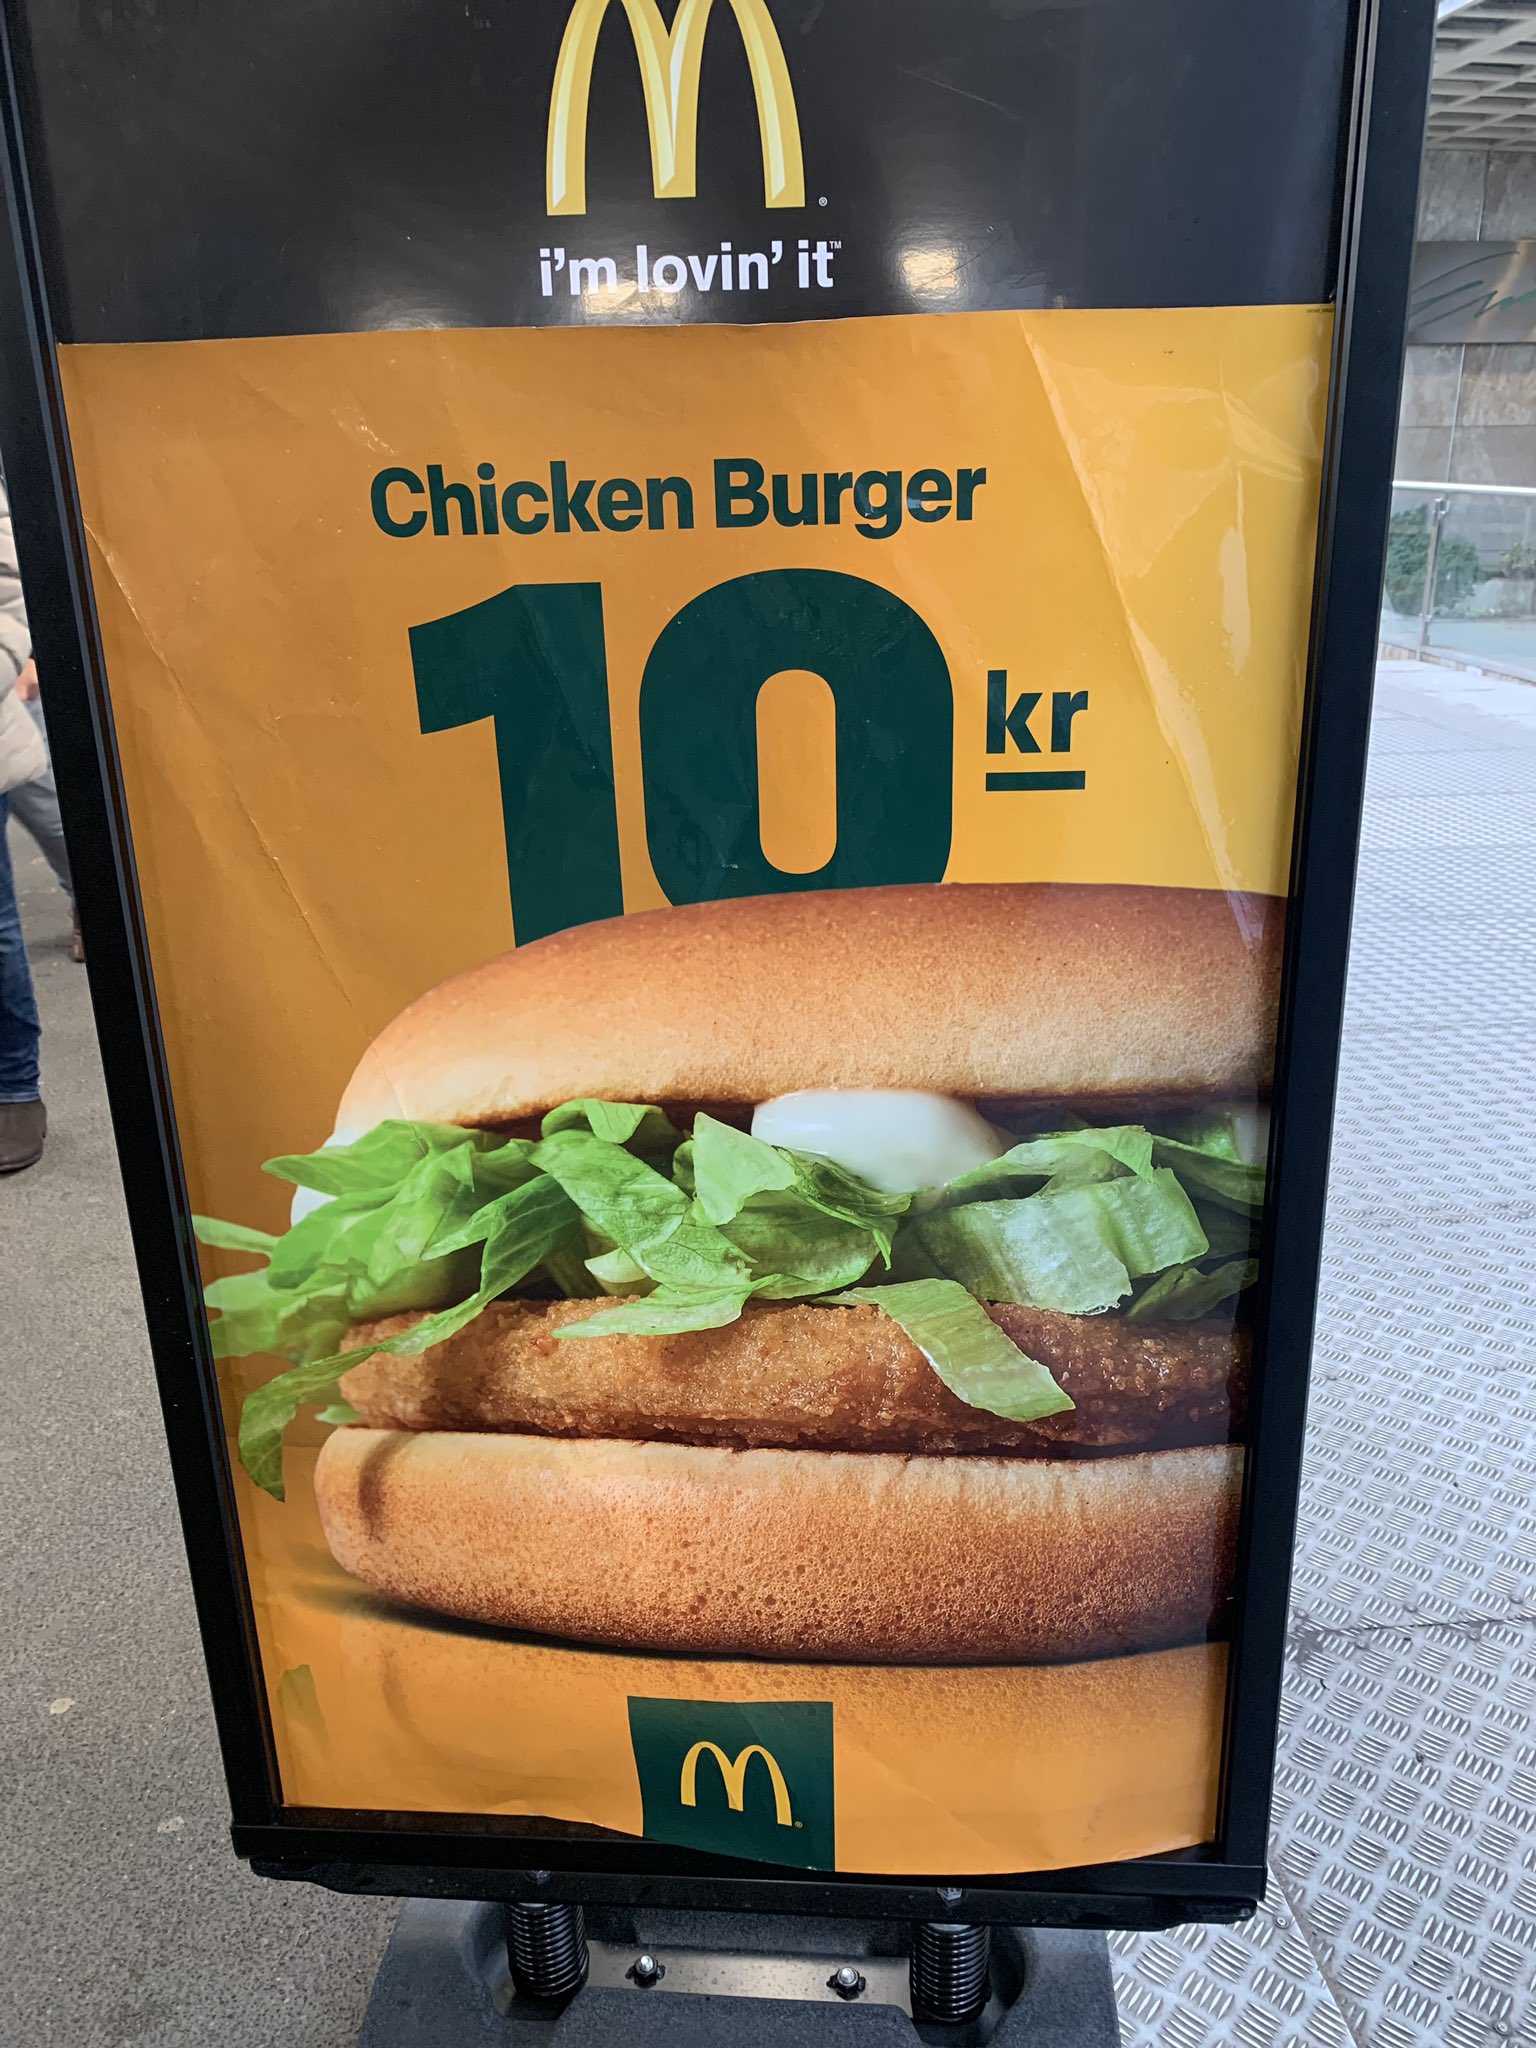 ﾎﾟん よかったらお住まいの国の マクドナルドのポスターをリプライして貰えないでしょうか 単純に職業柄その国で良しとされるデザインを同じ店の広告で比べてみたいんです スウェーデン はこんな感じで 明るくもトーンを落とした色